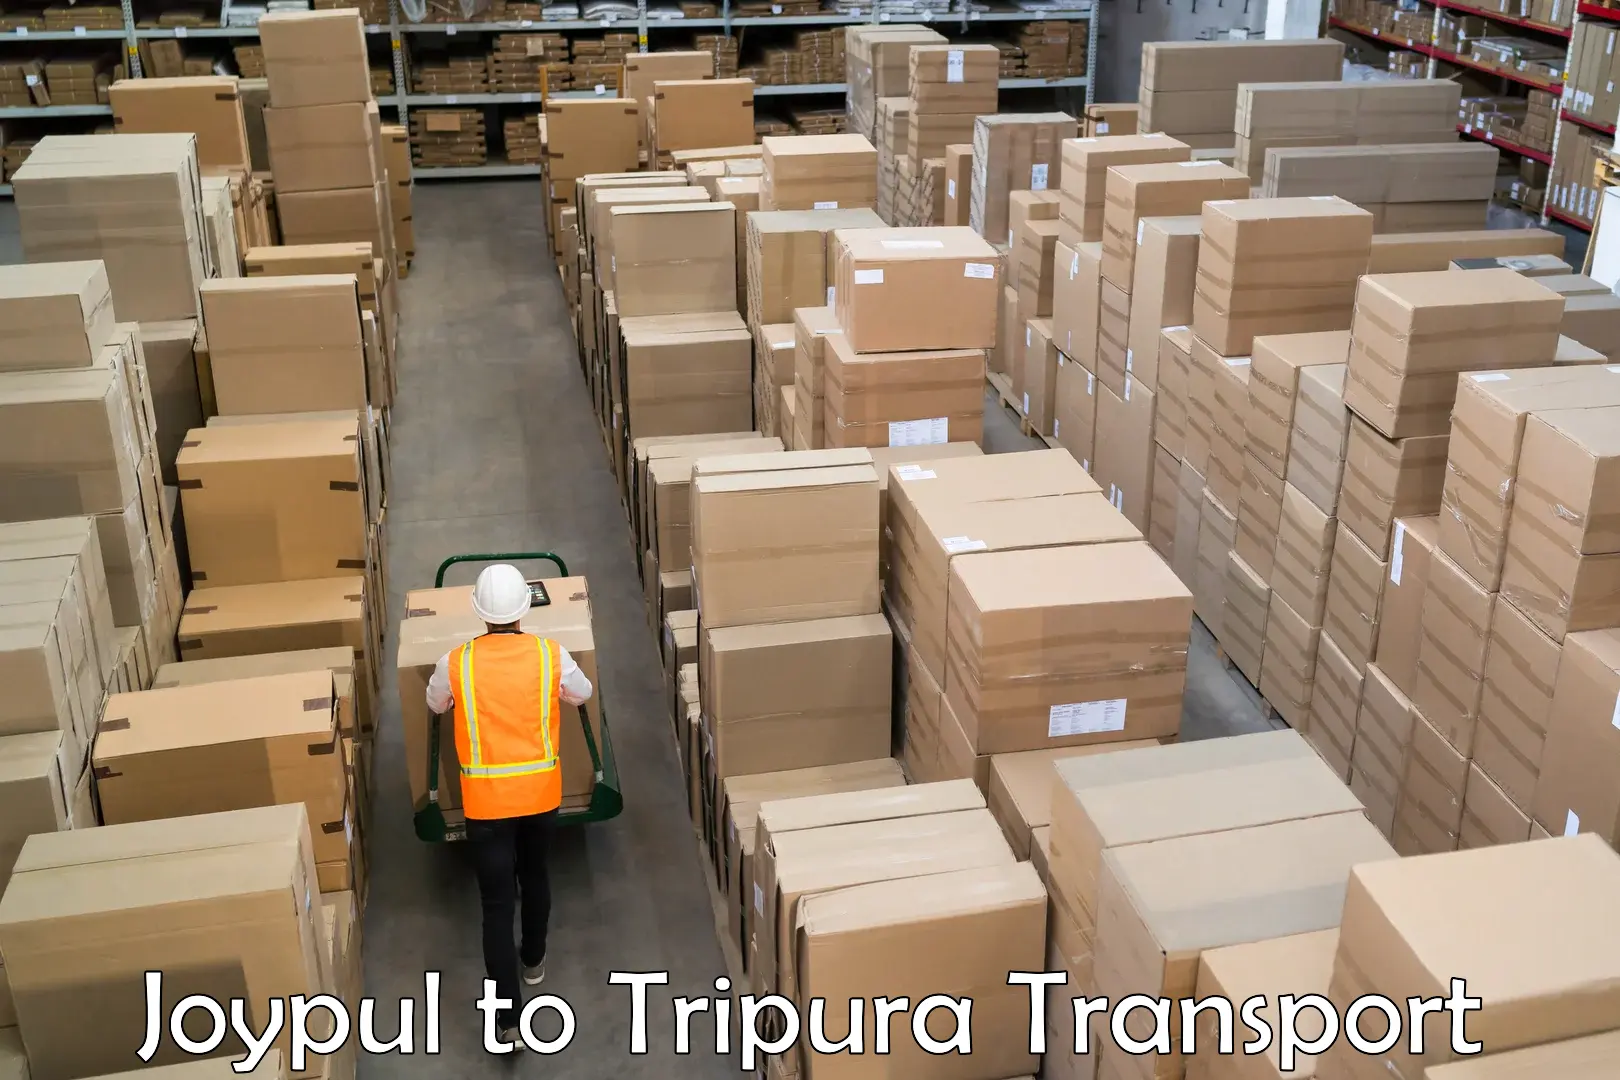 Transport in sharing Joypul to Tripura